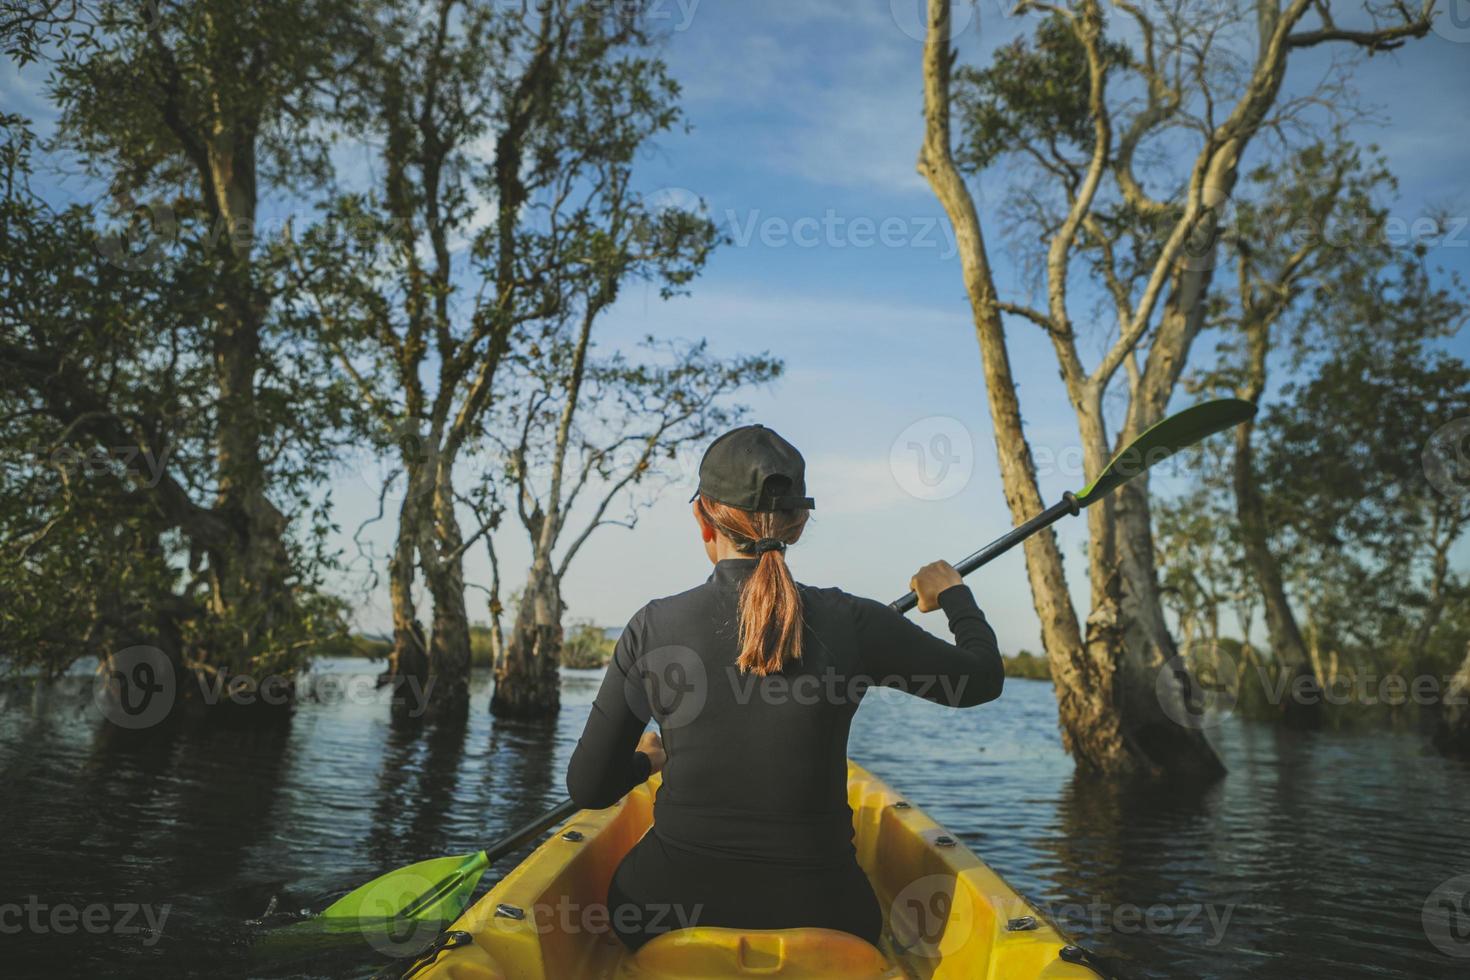 vrouw zeilen zeekajak in mangrovebos foto